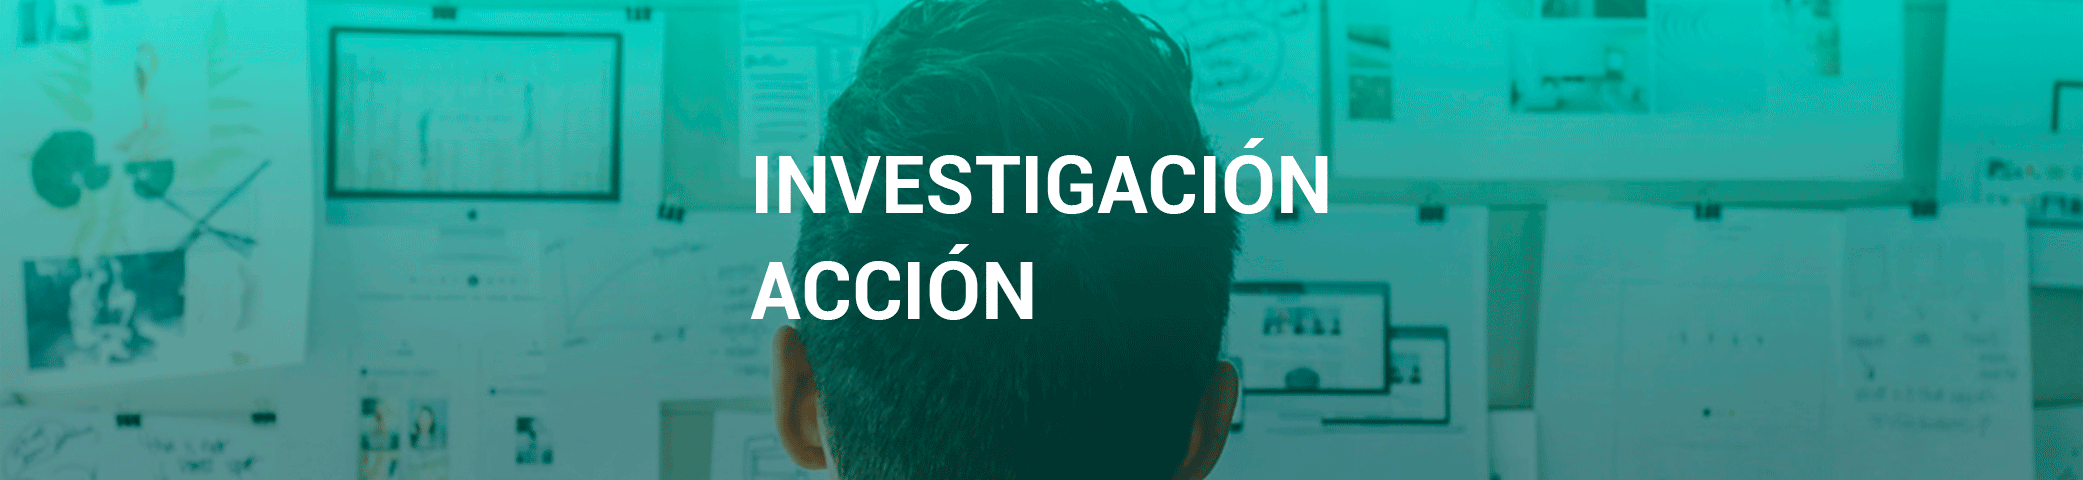 investigacion-y-accion-banner